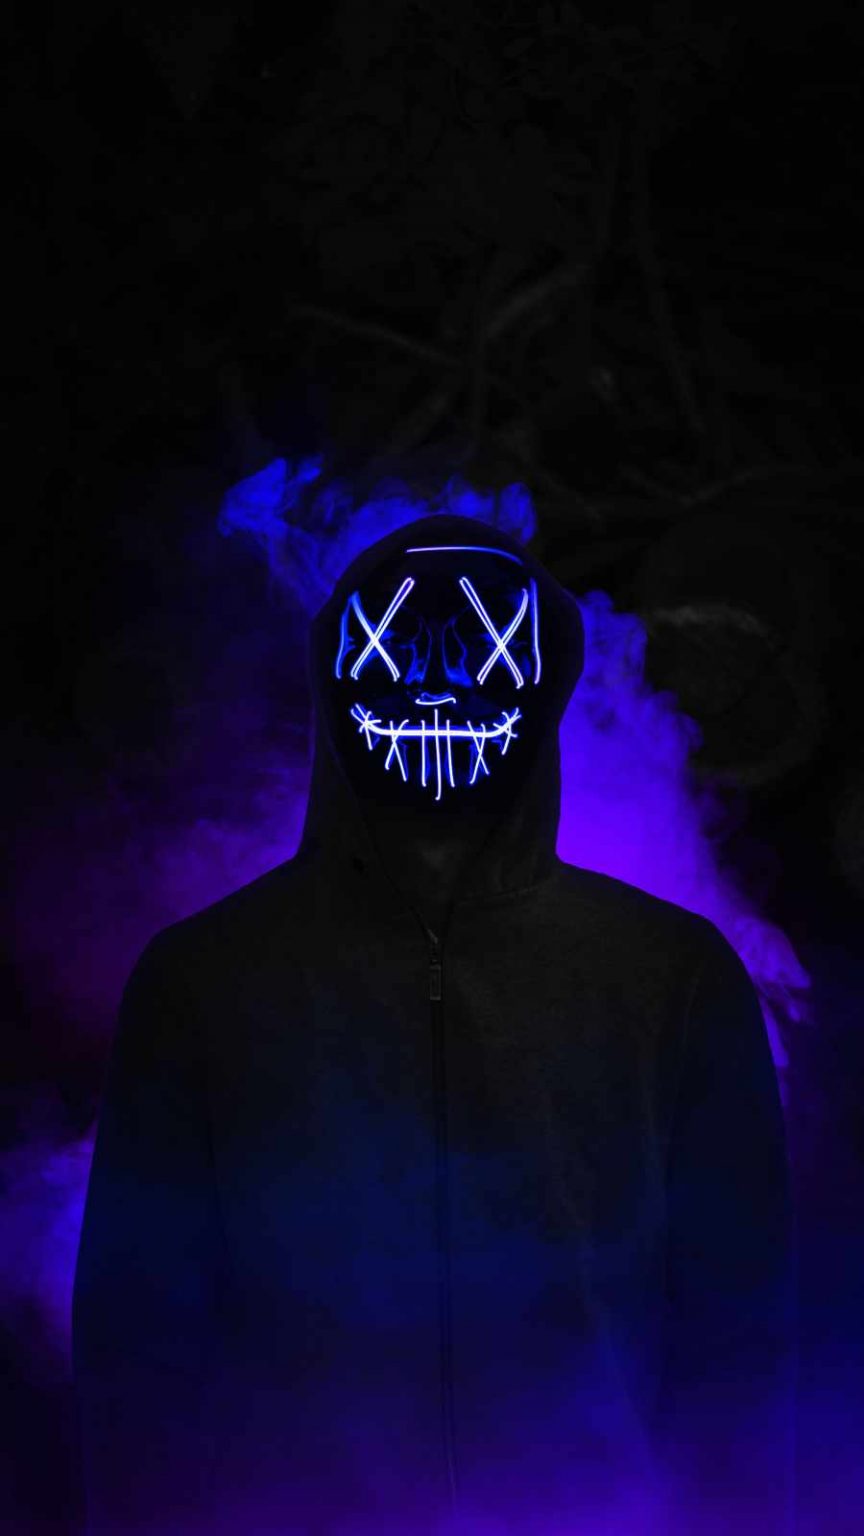 Neon Mask Hoodie Guy Smoke - iPhone Wallpapers